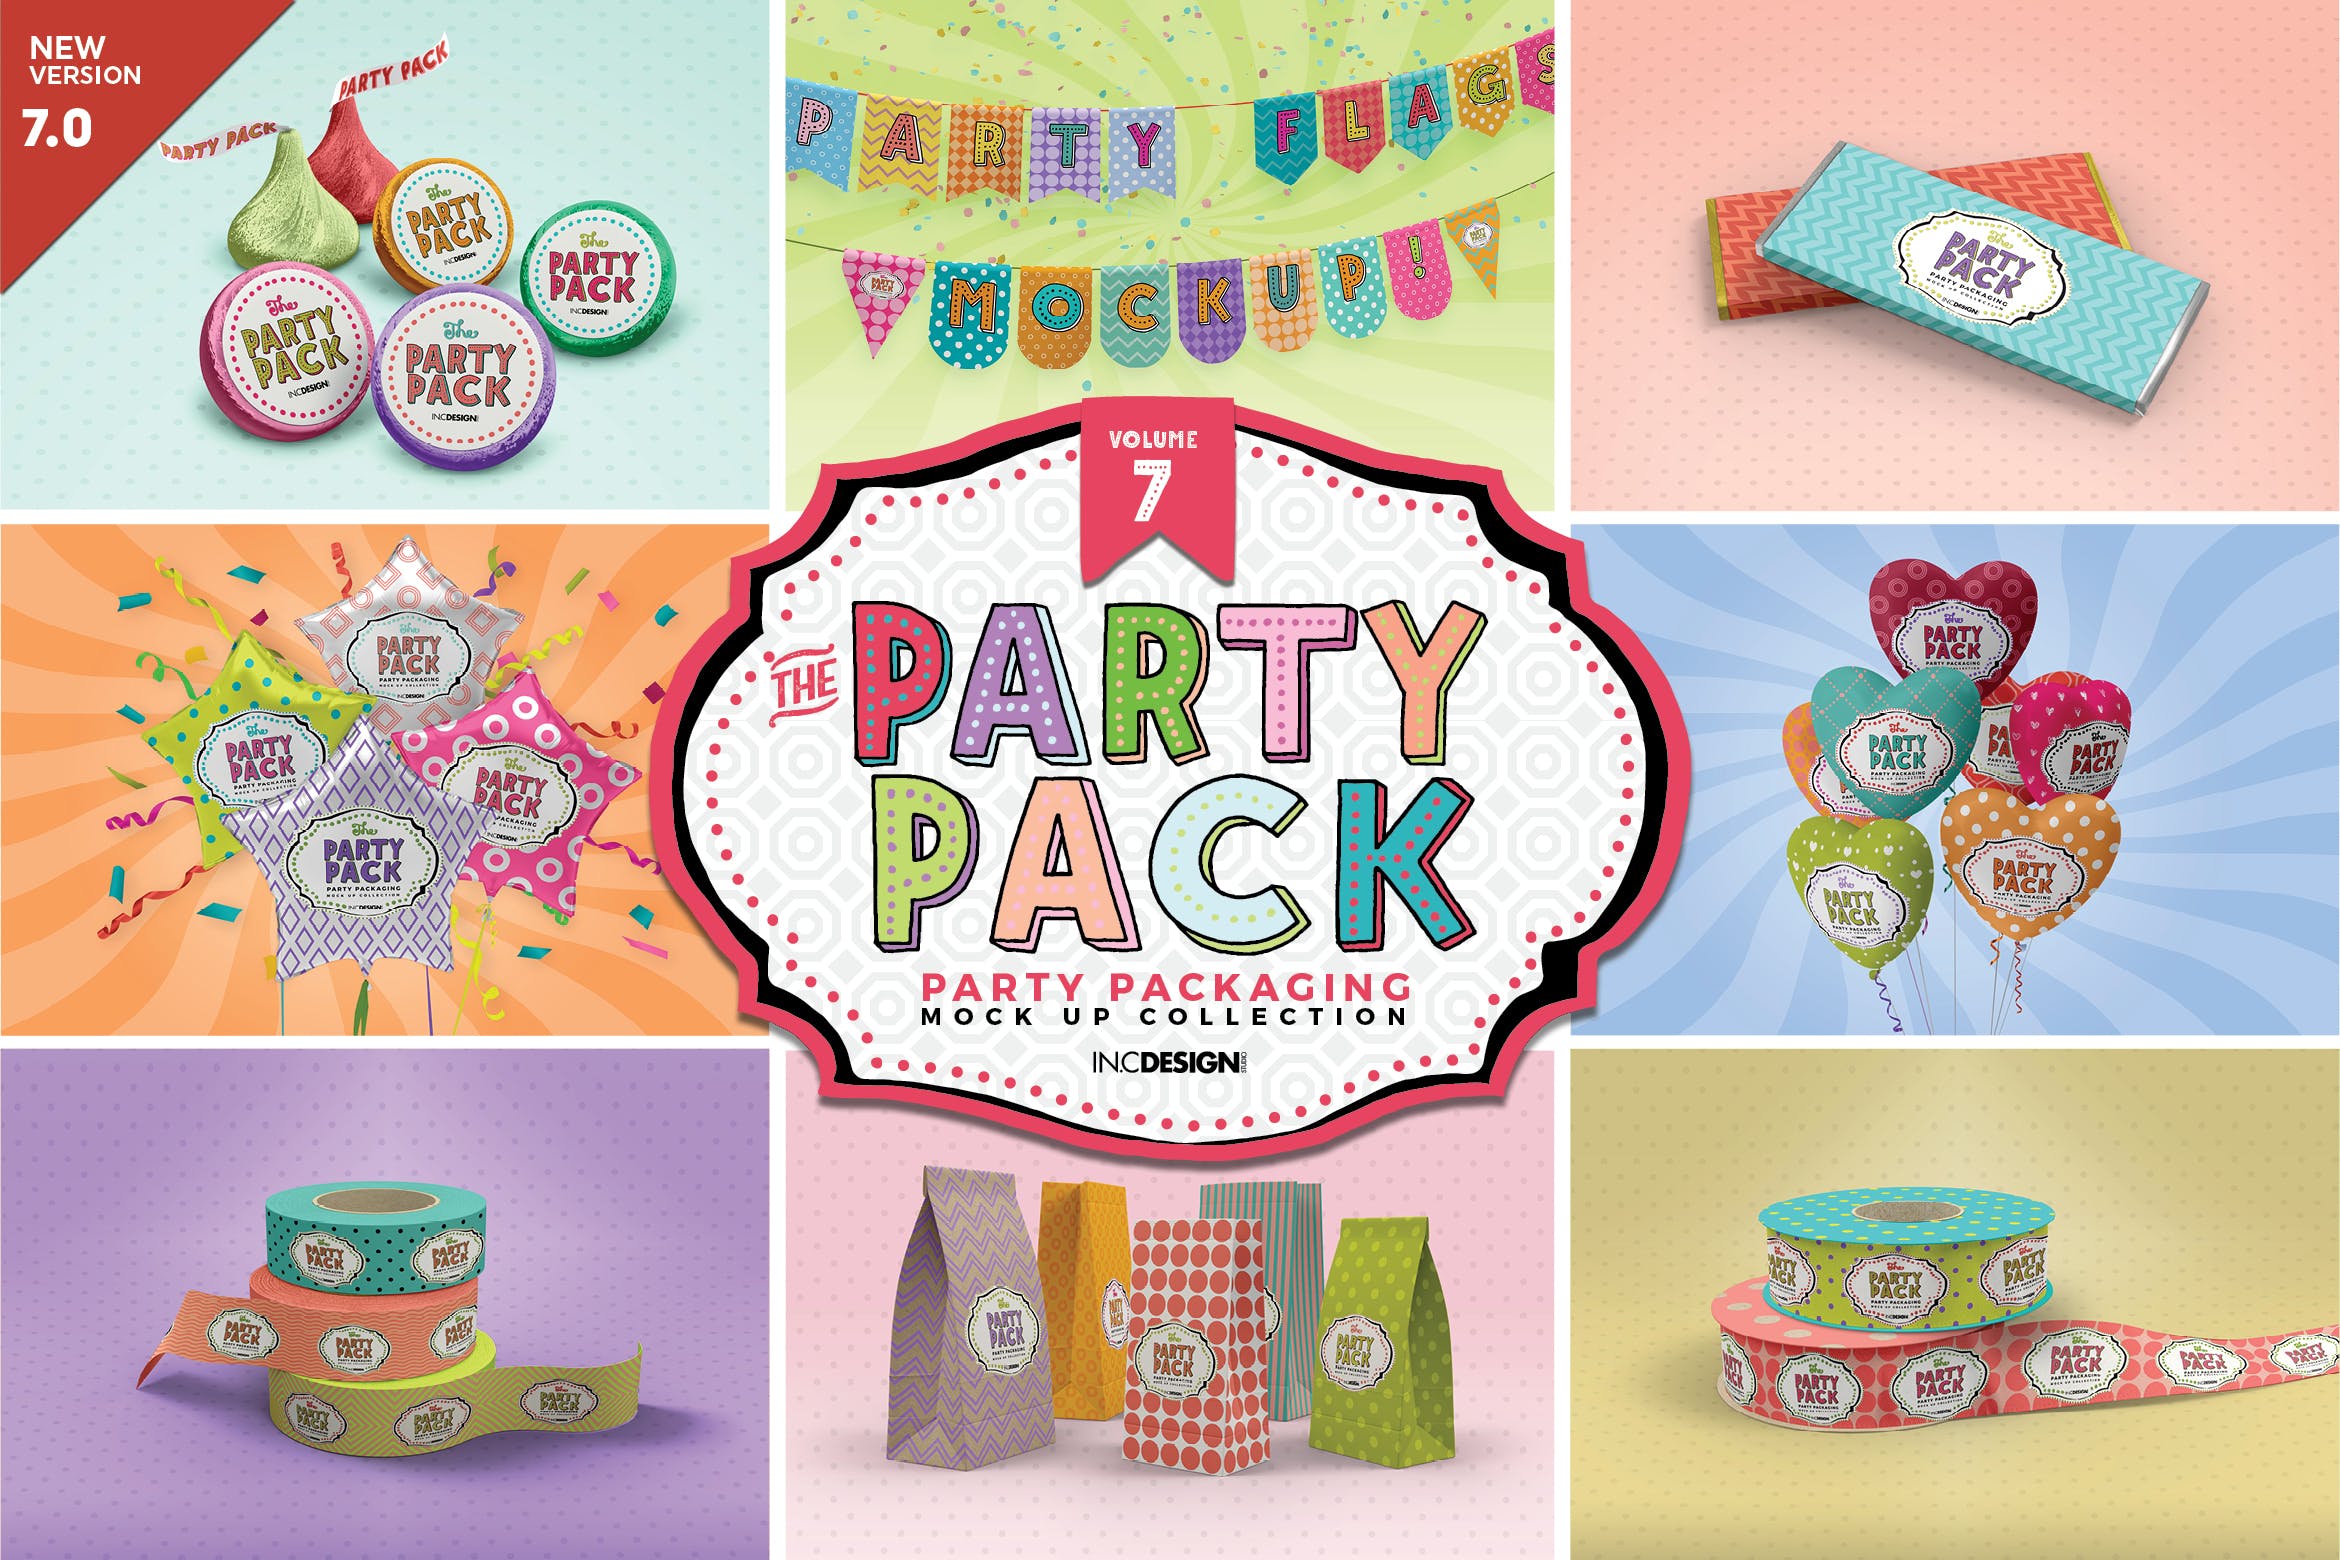 派对聚会主题装饰包装设计样机v7 Party Packaging Mockups Volume7插图